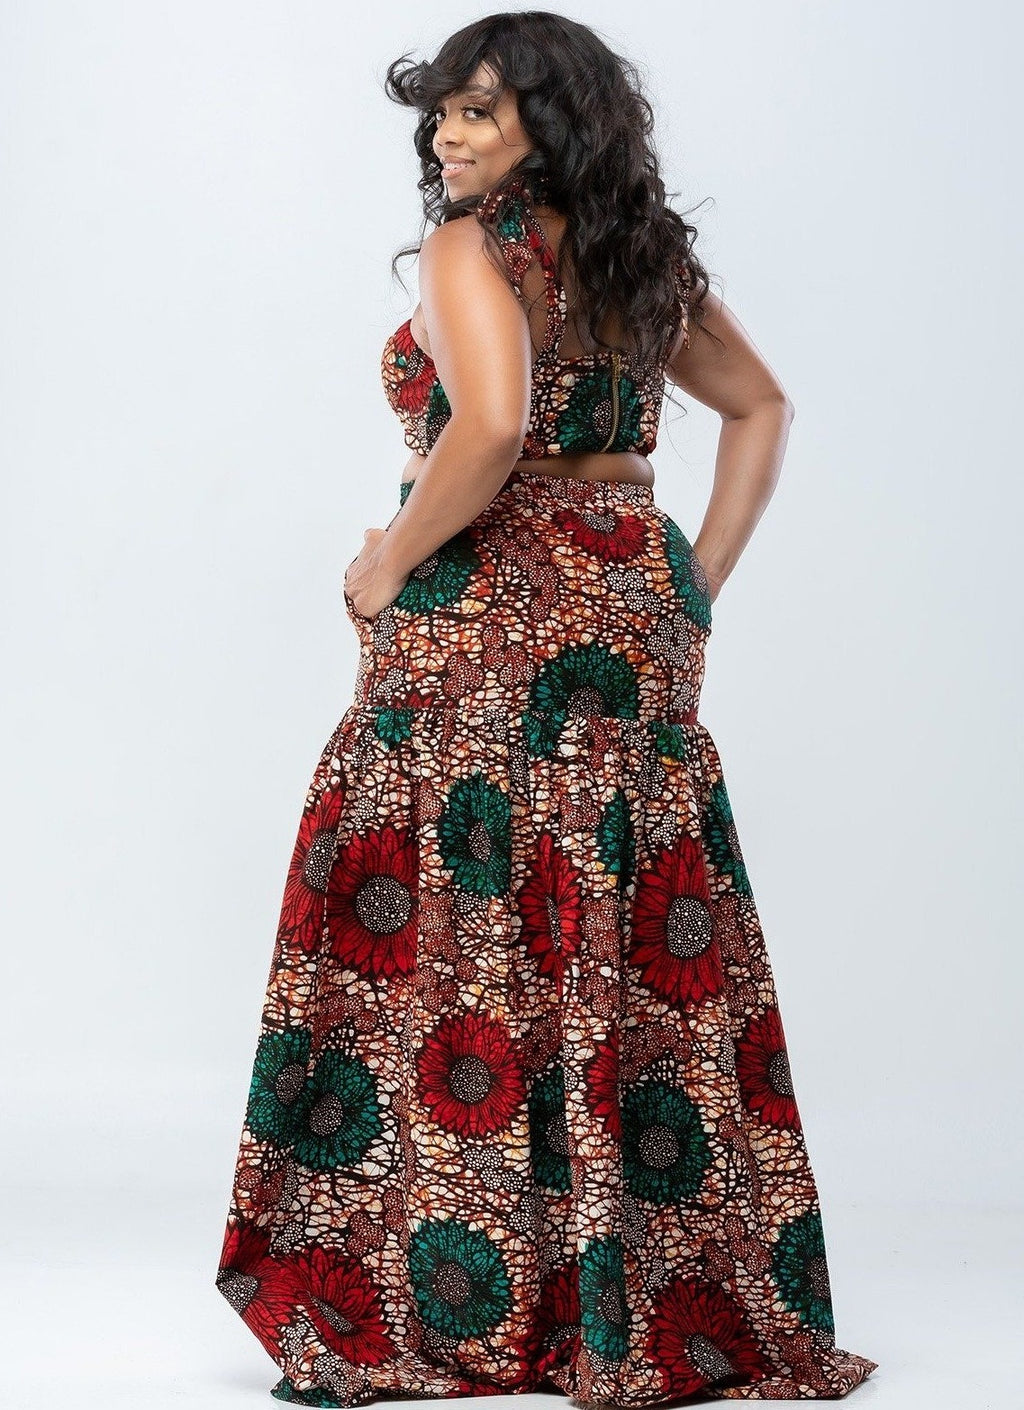 Africa inspired dress